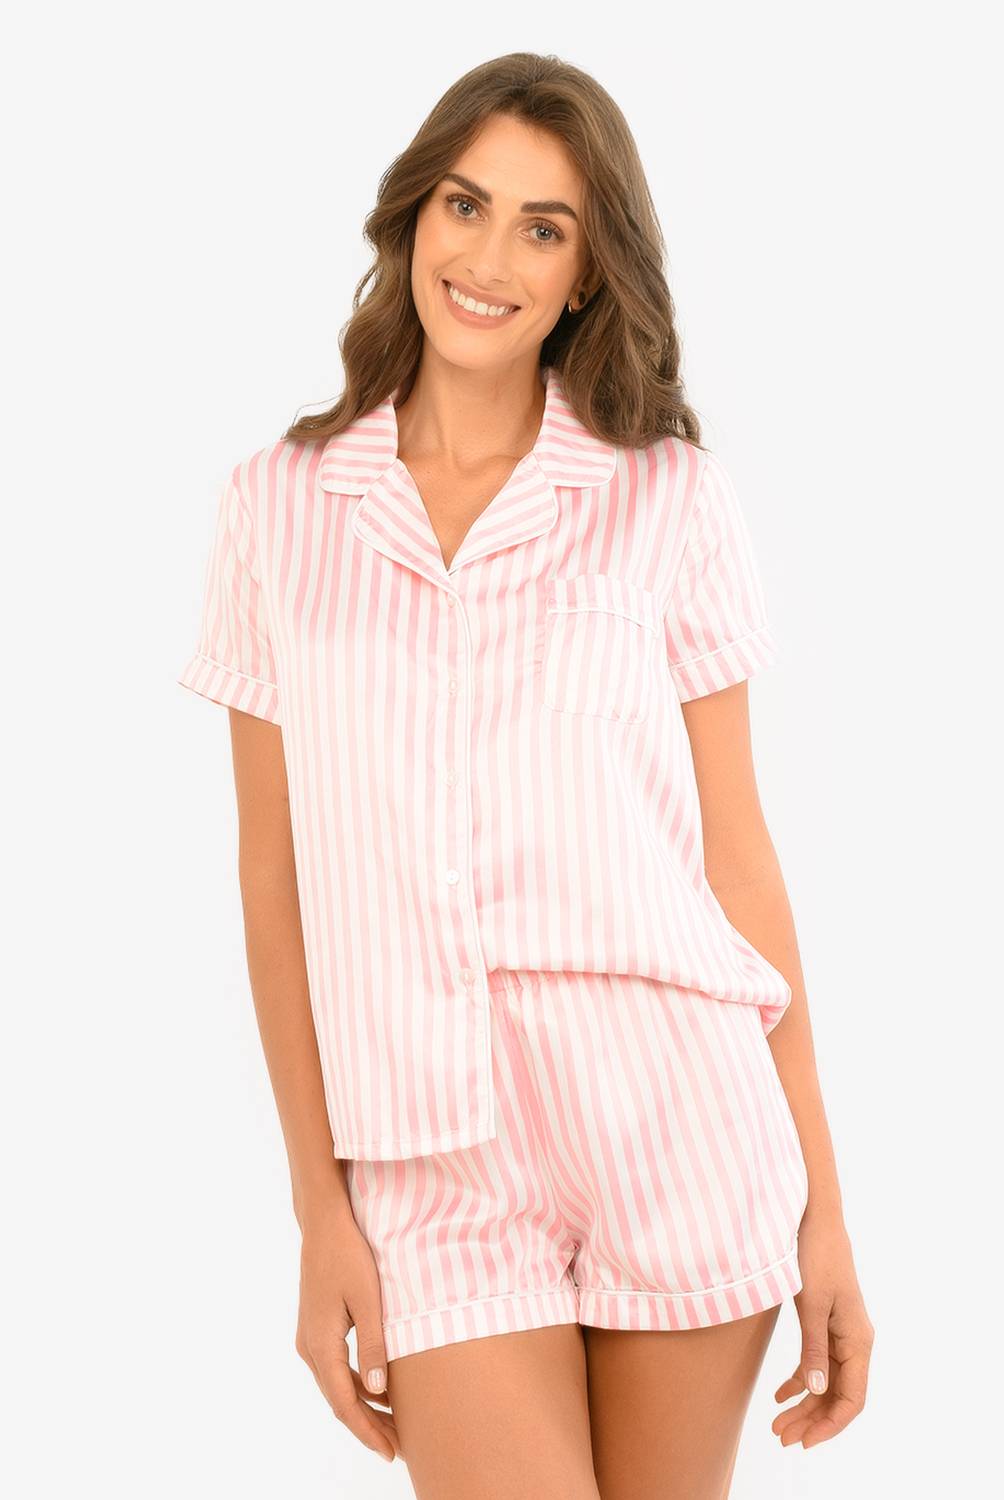 DAHLA - Dahla Pijama Mujer